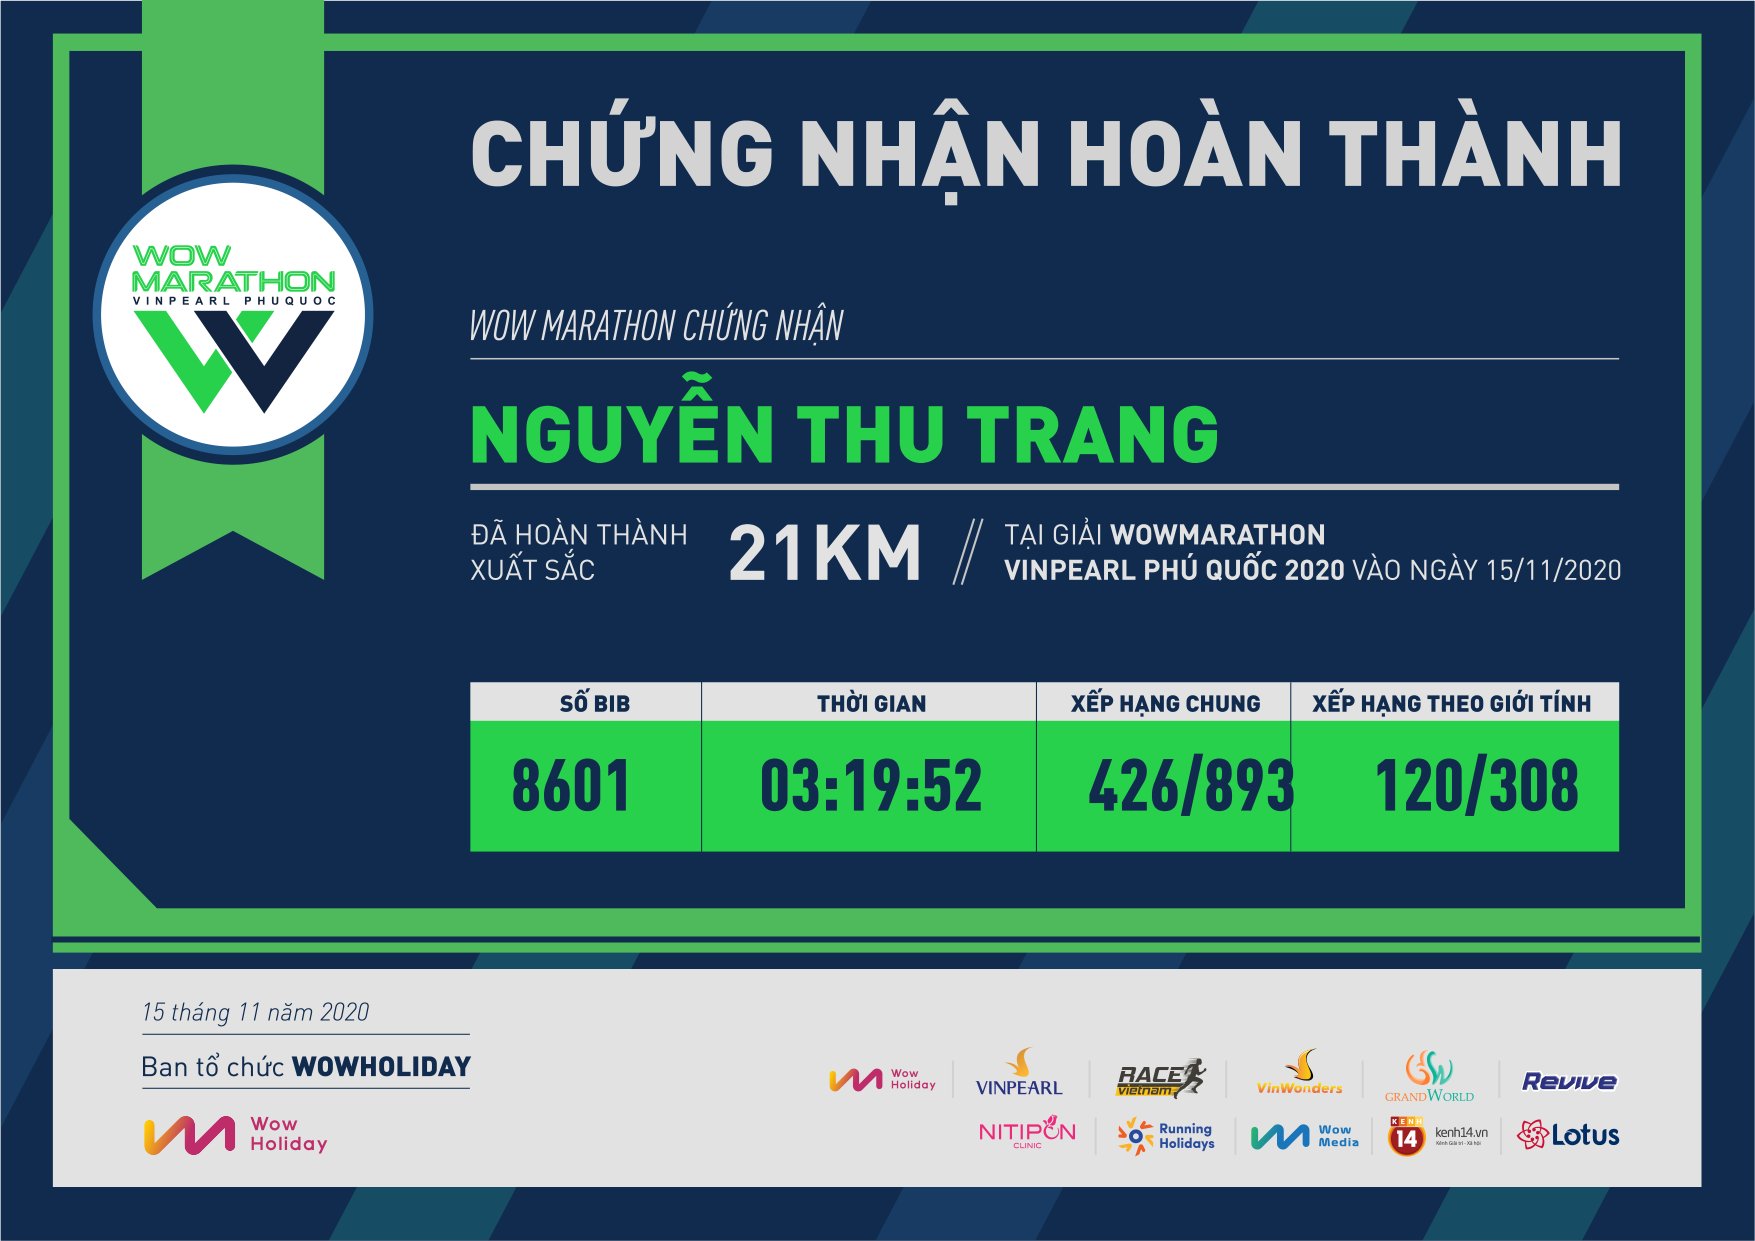 8601 - Nguyễn Thu Trang